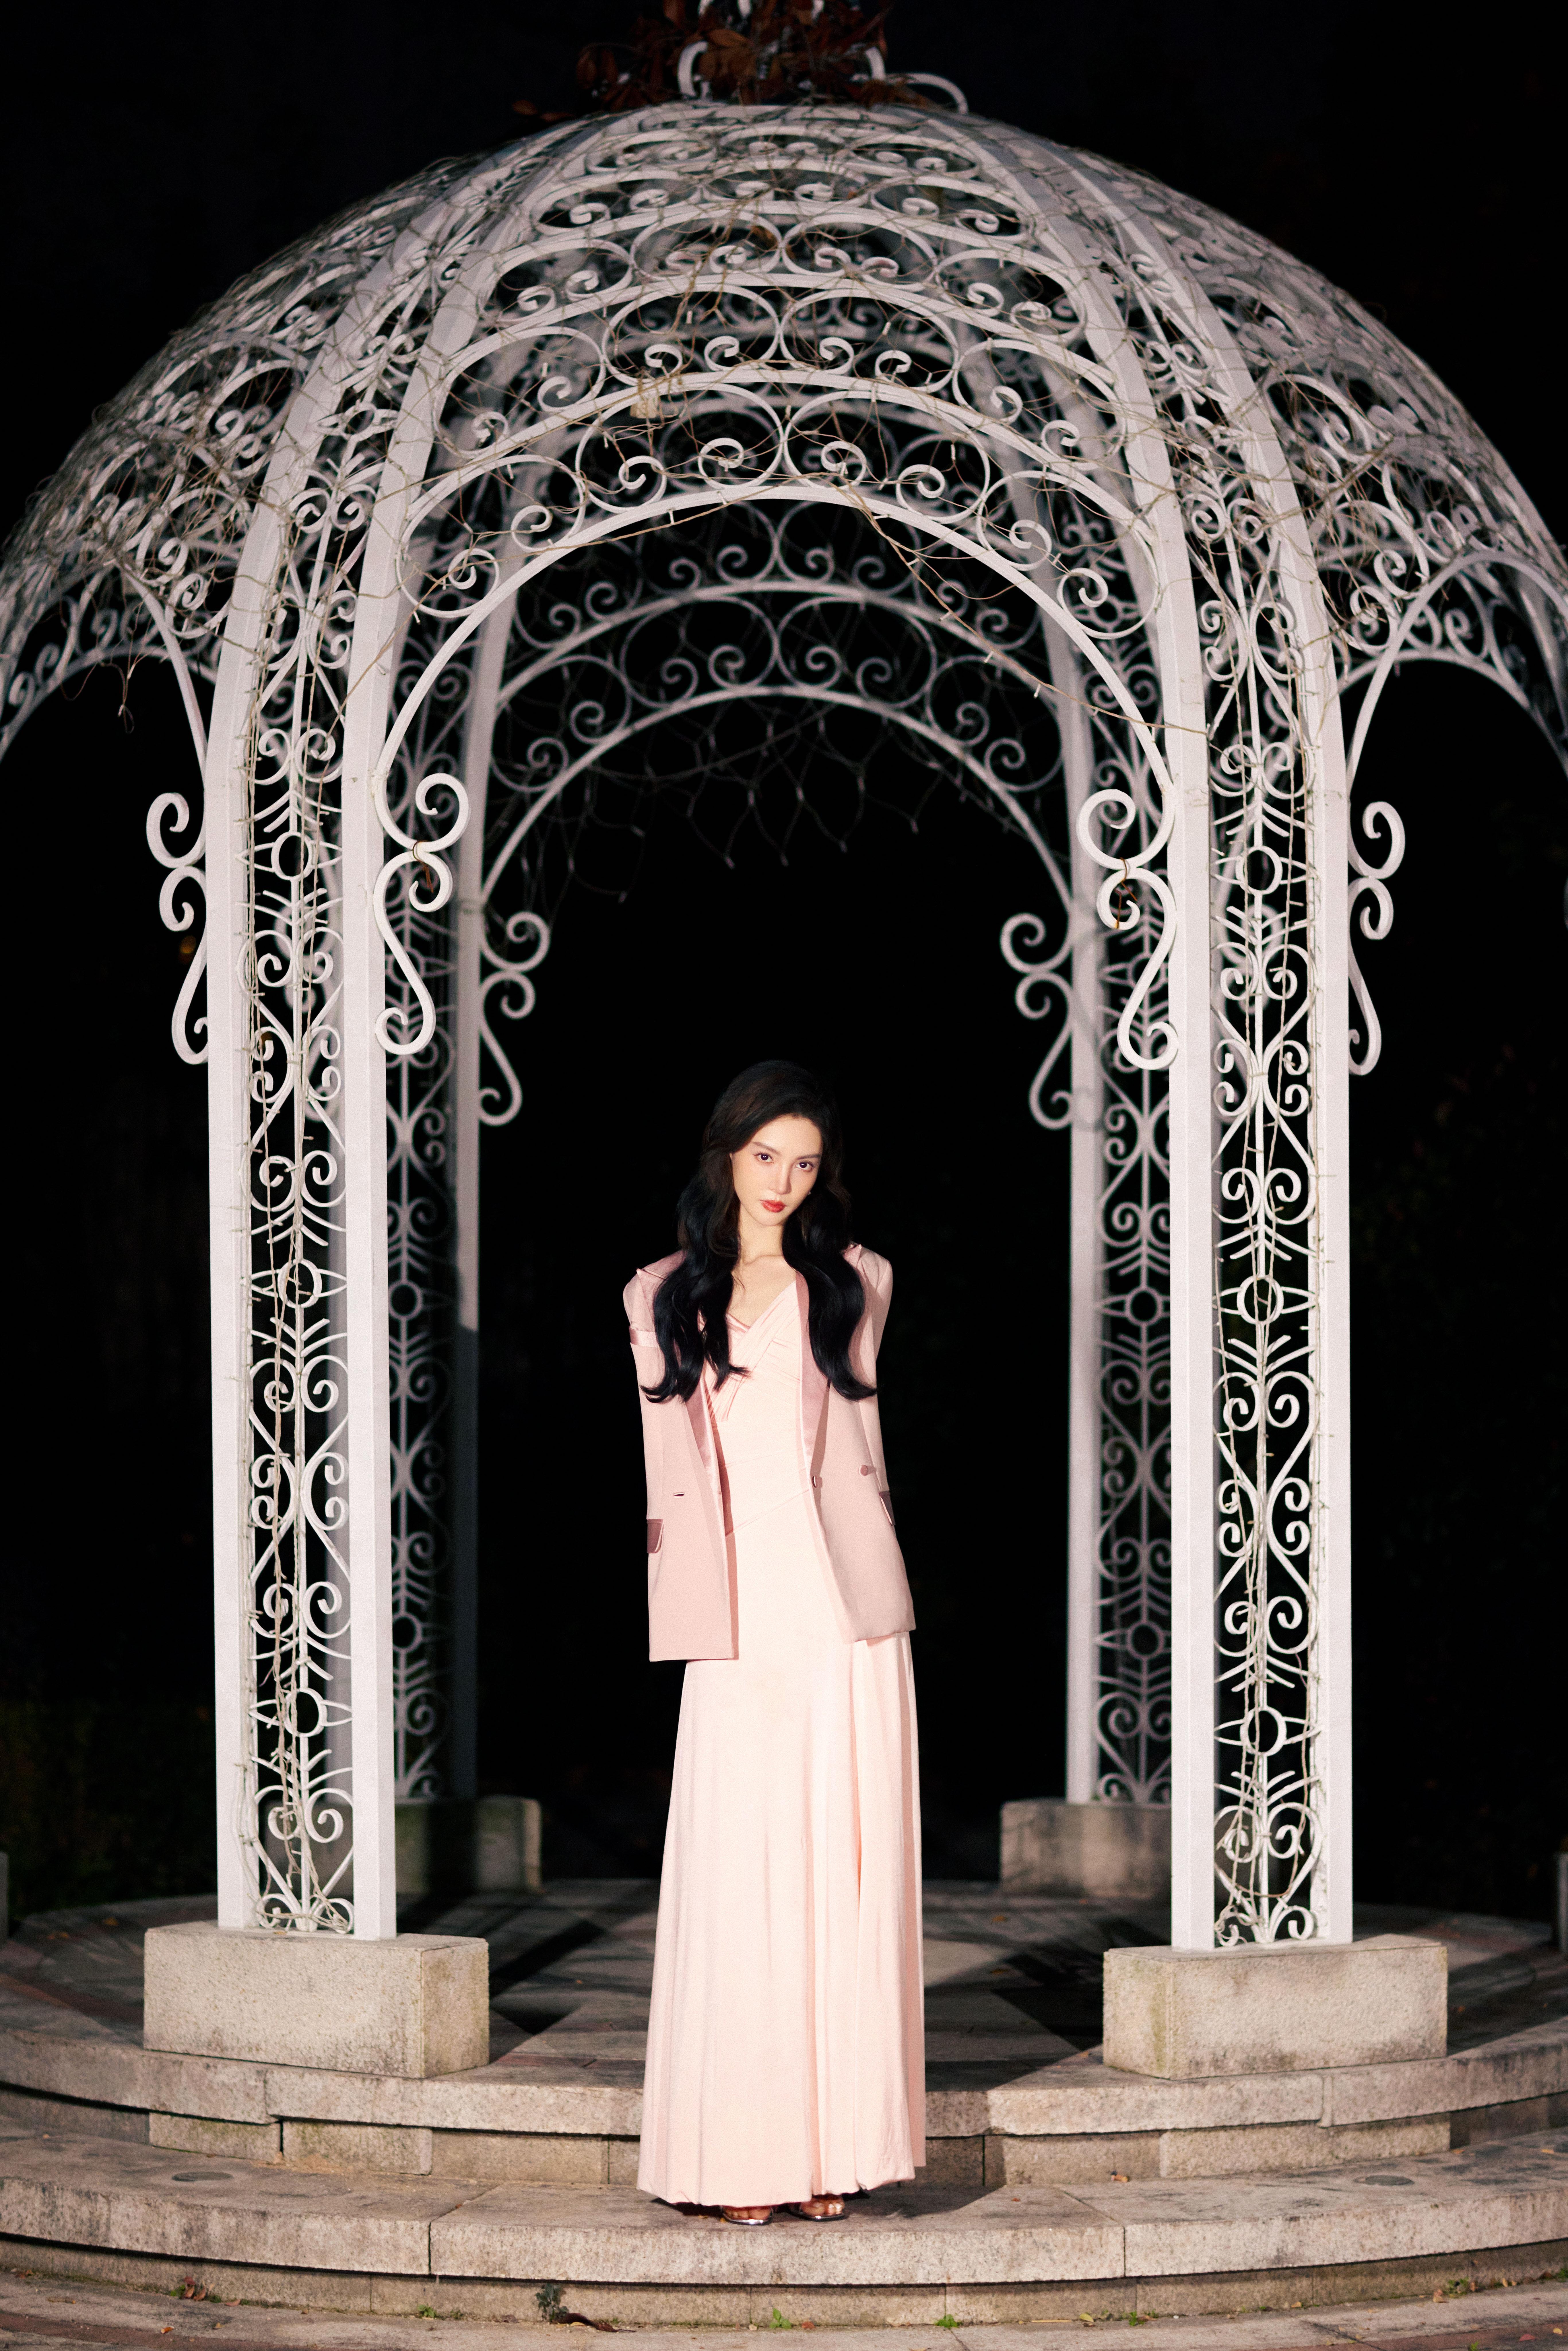 金晨粉色连衣裙穿过光点闪烁的长廊，邂逅沉睡静谧花园。,2 (1)